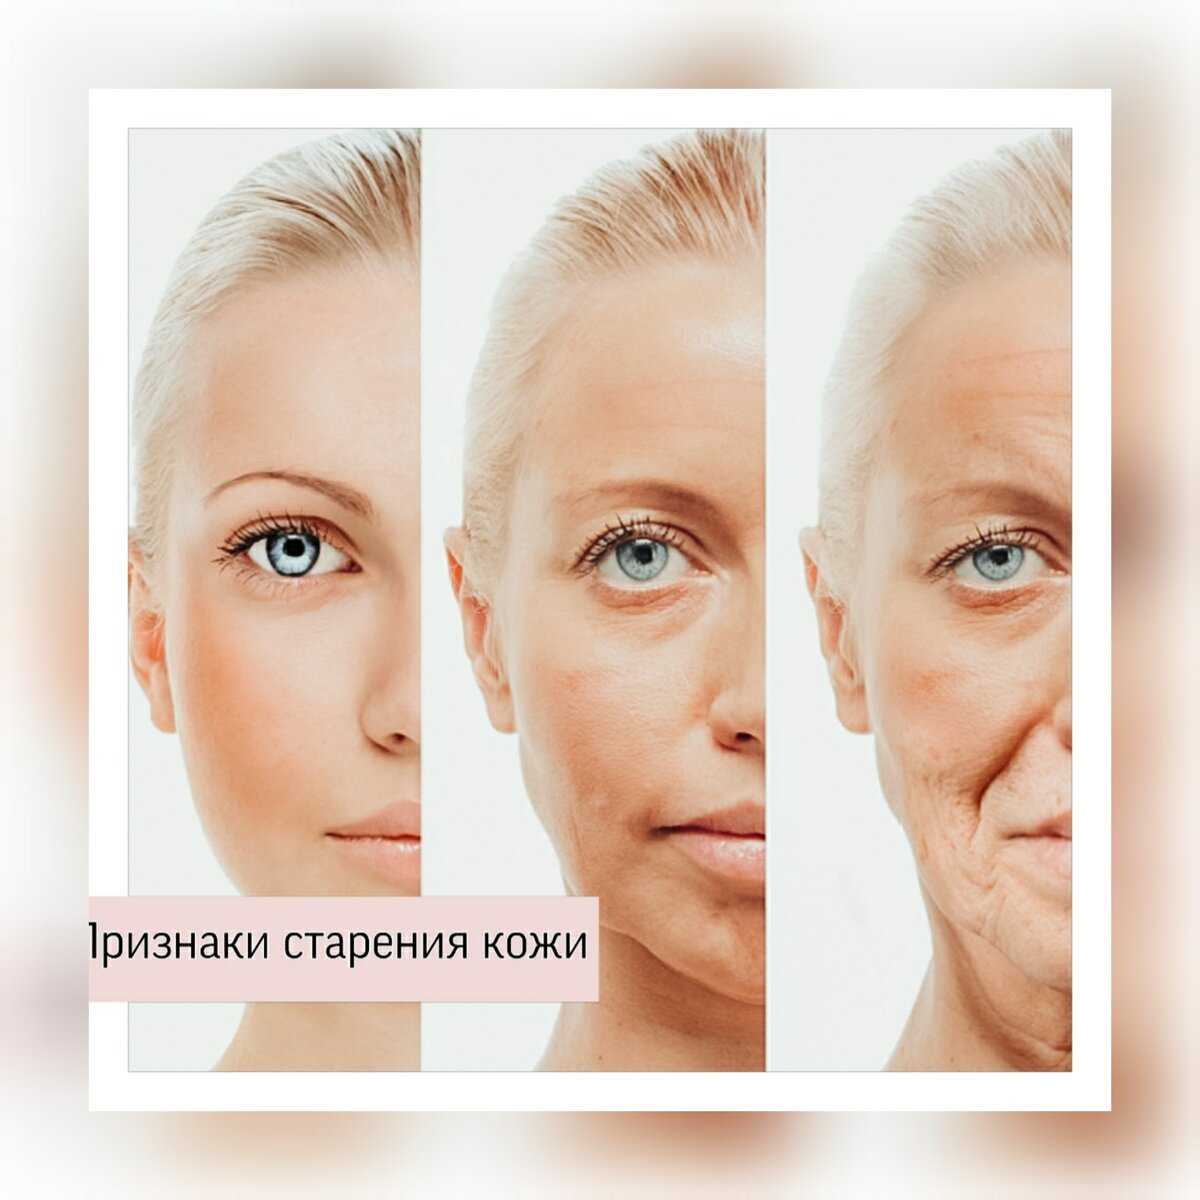 Группы возрастных изменений. Старение кожи лица. Возрастные изменения кожи тела. Признаки старения. Возрастные изменения лица у женщин.